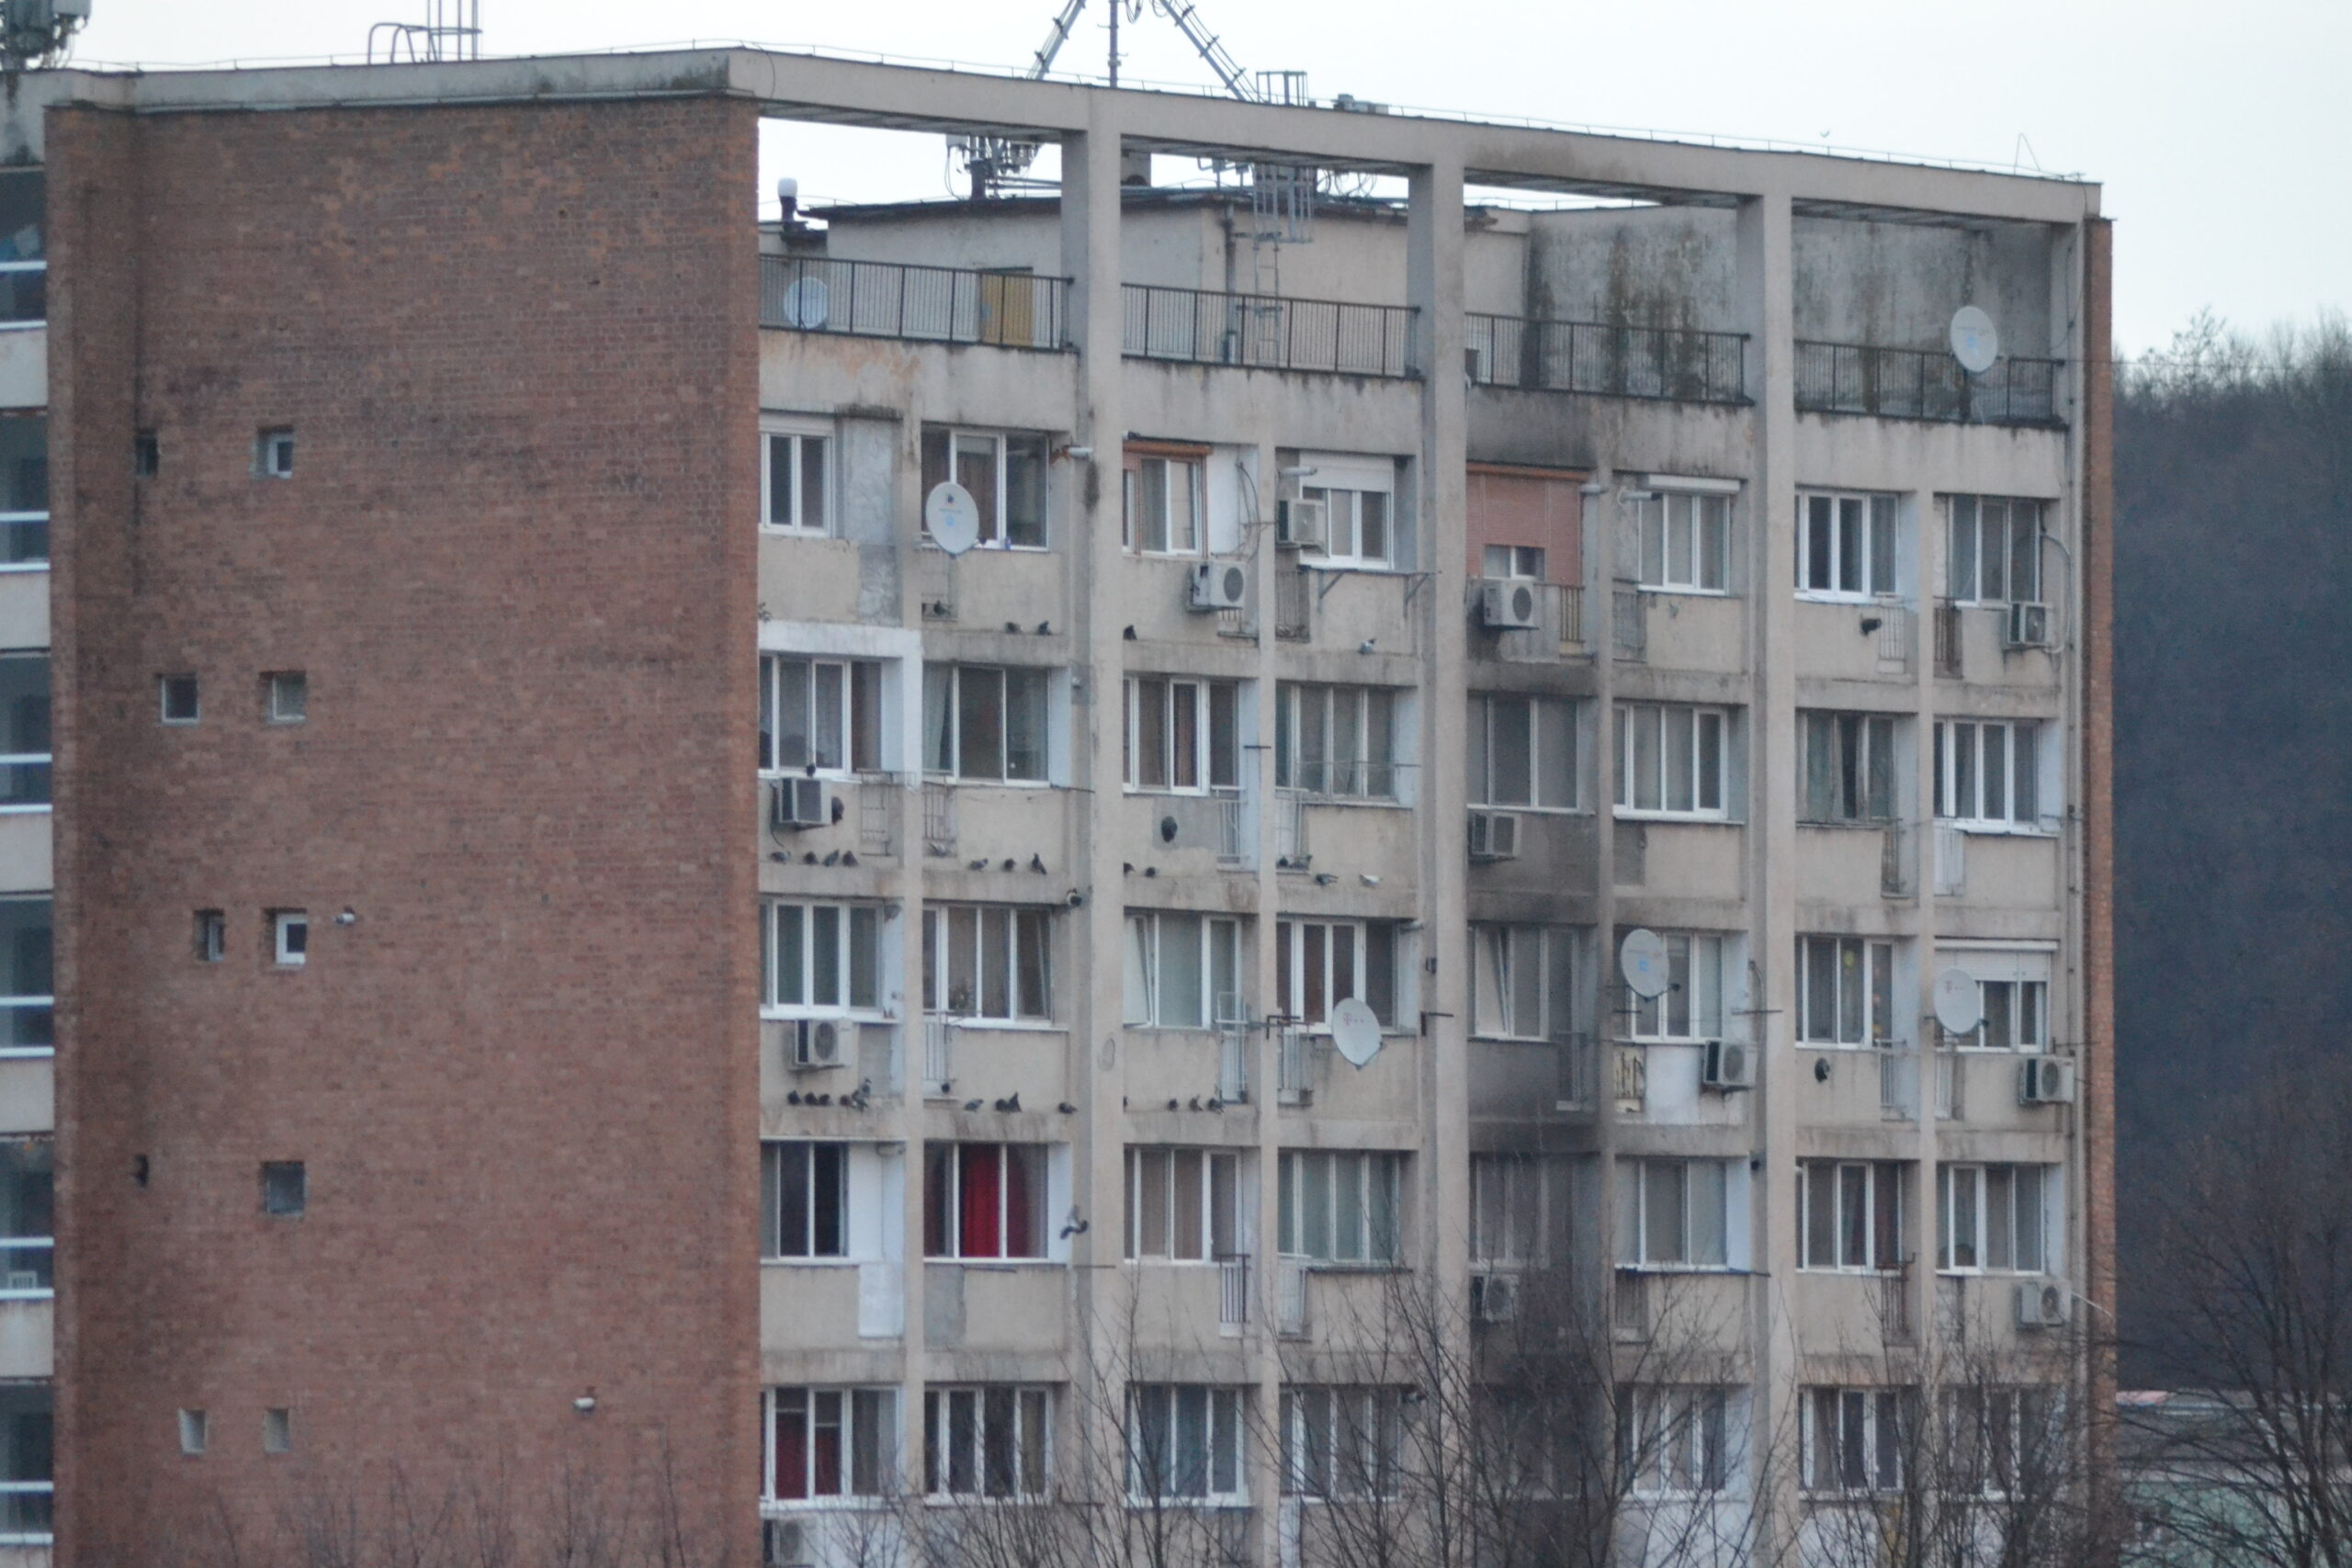 Incendiu, la un bloc de locuințe din Reșița